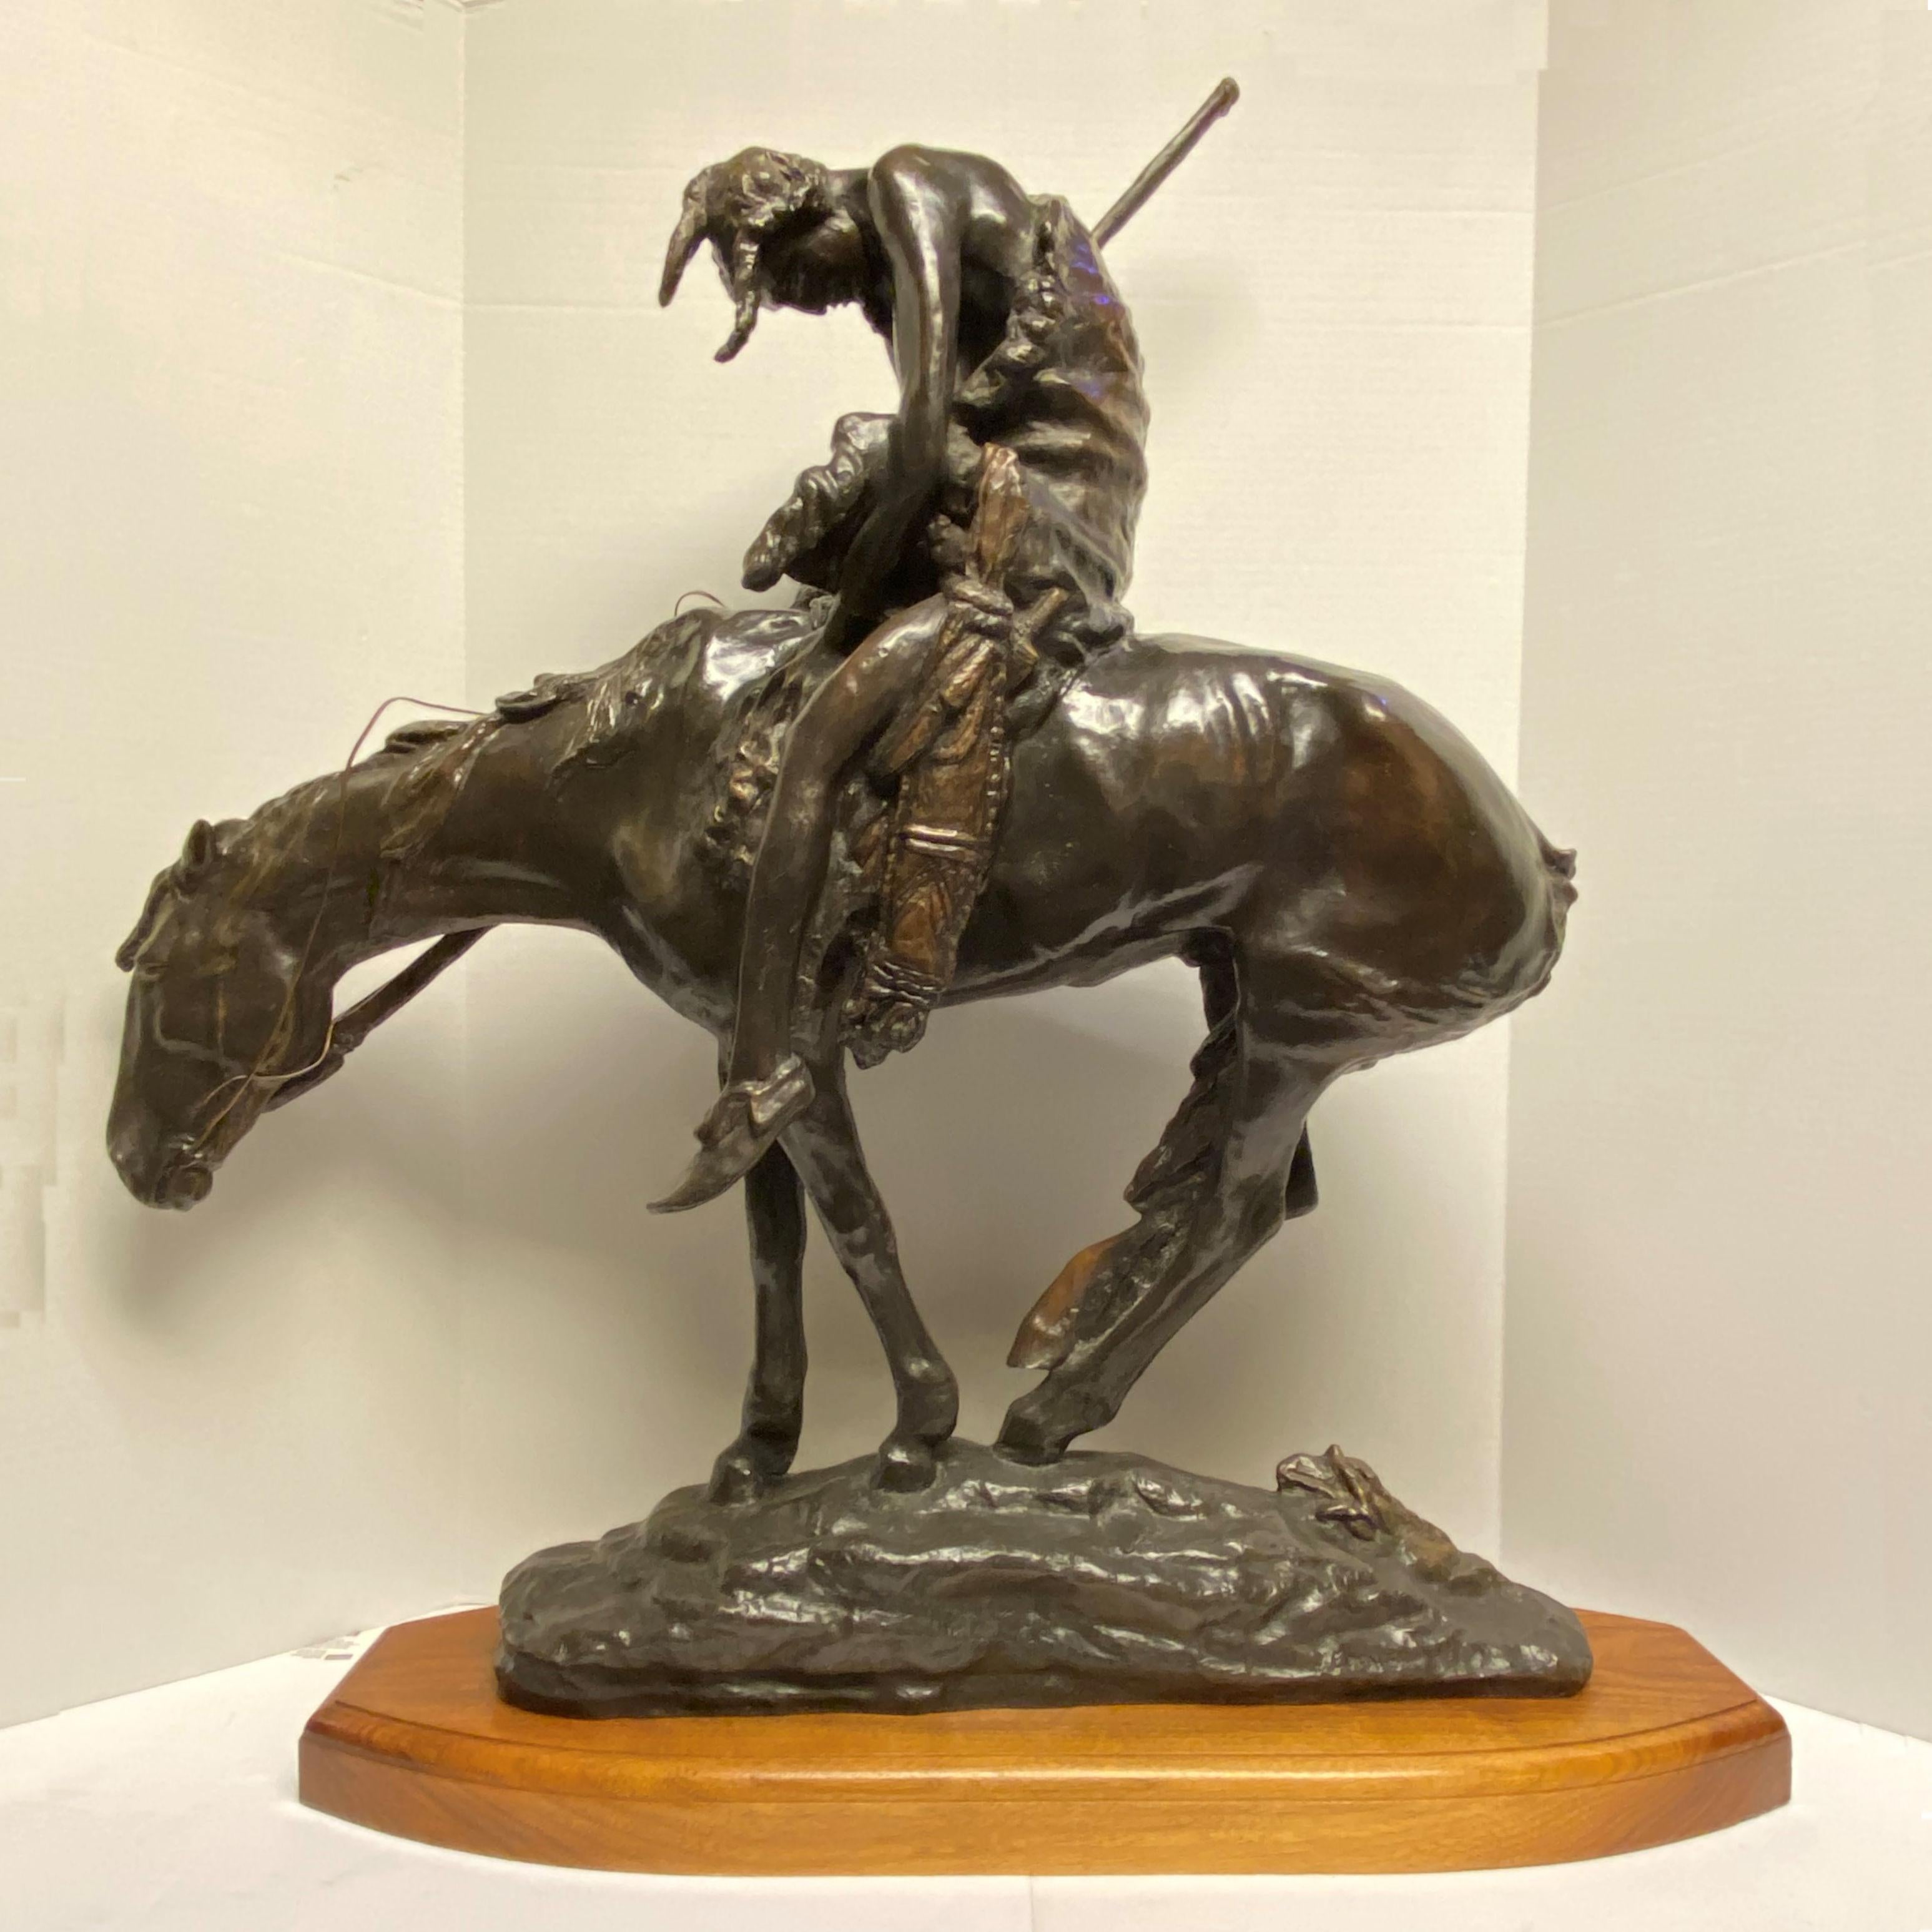 Bronze d'après James Earl Fraser (1876-1953) intitulé End of the Trail, monté sur un socle en bois craquelé et teinté.